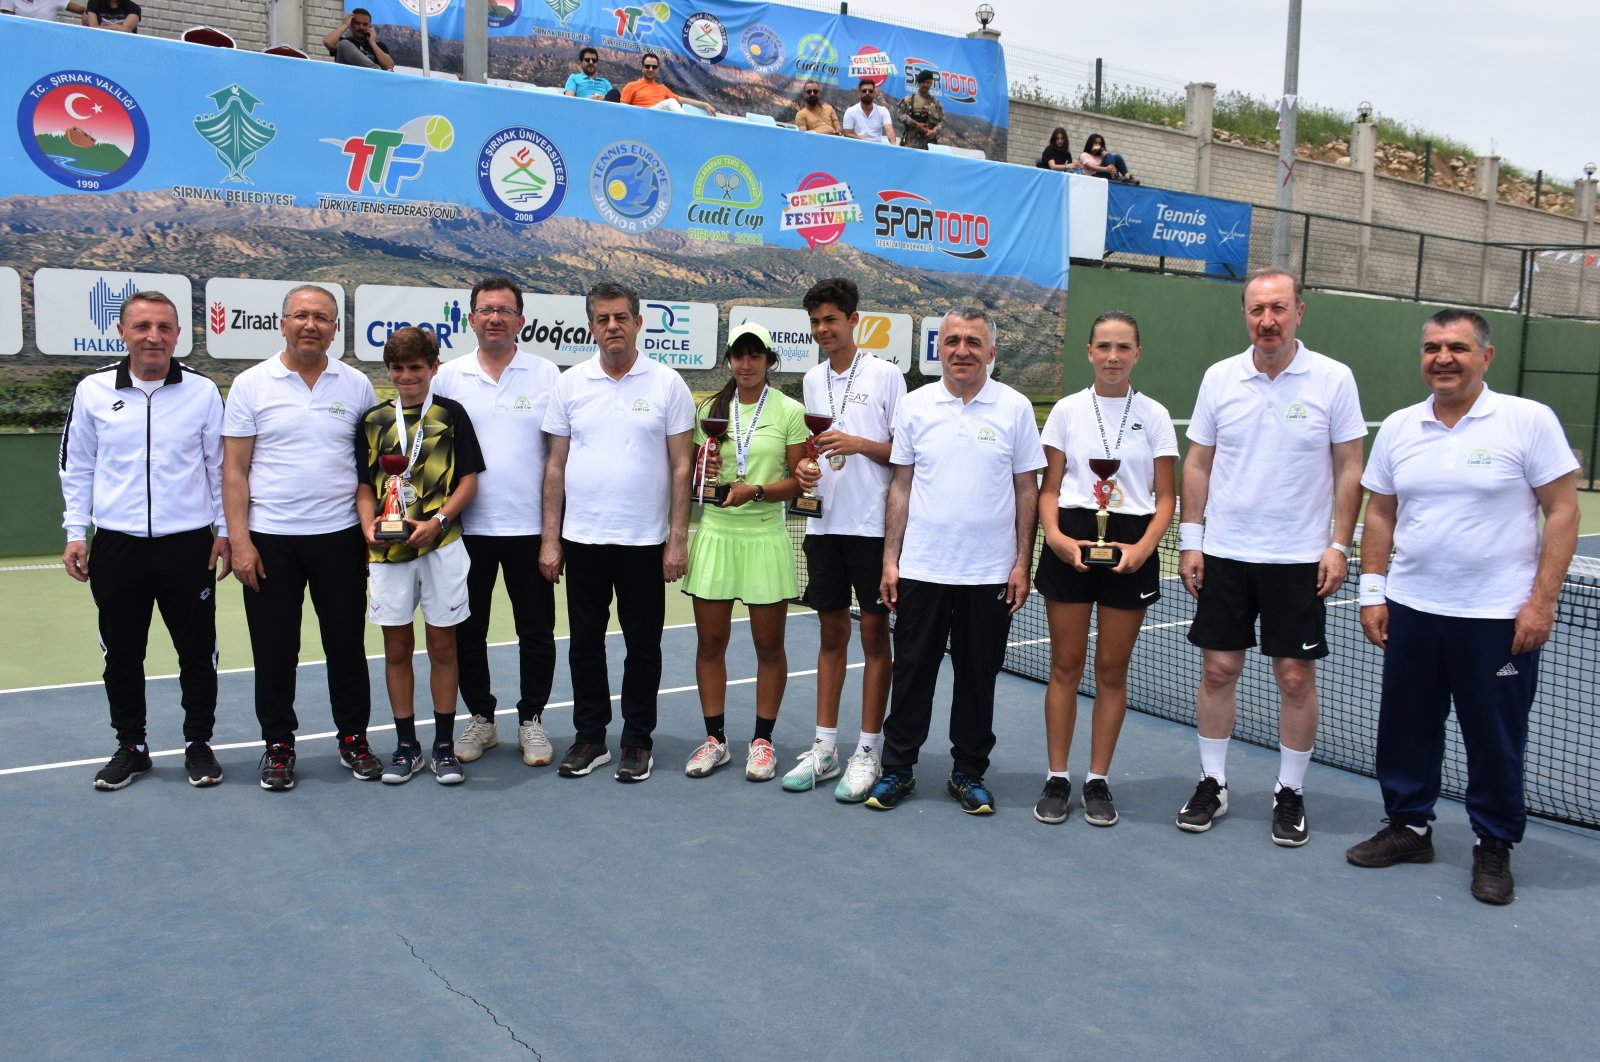 முதல்rnak’ın ilk uluslararası tenis etkinliği olan Cudi Cup’ta perde kapanıyor